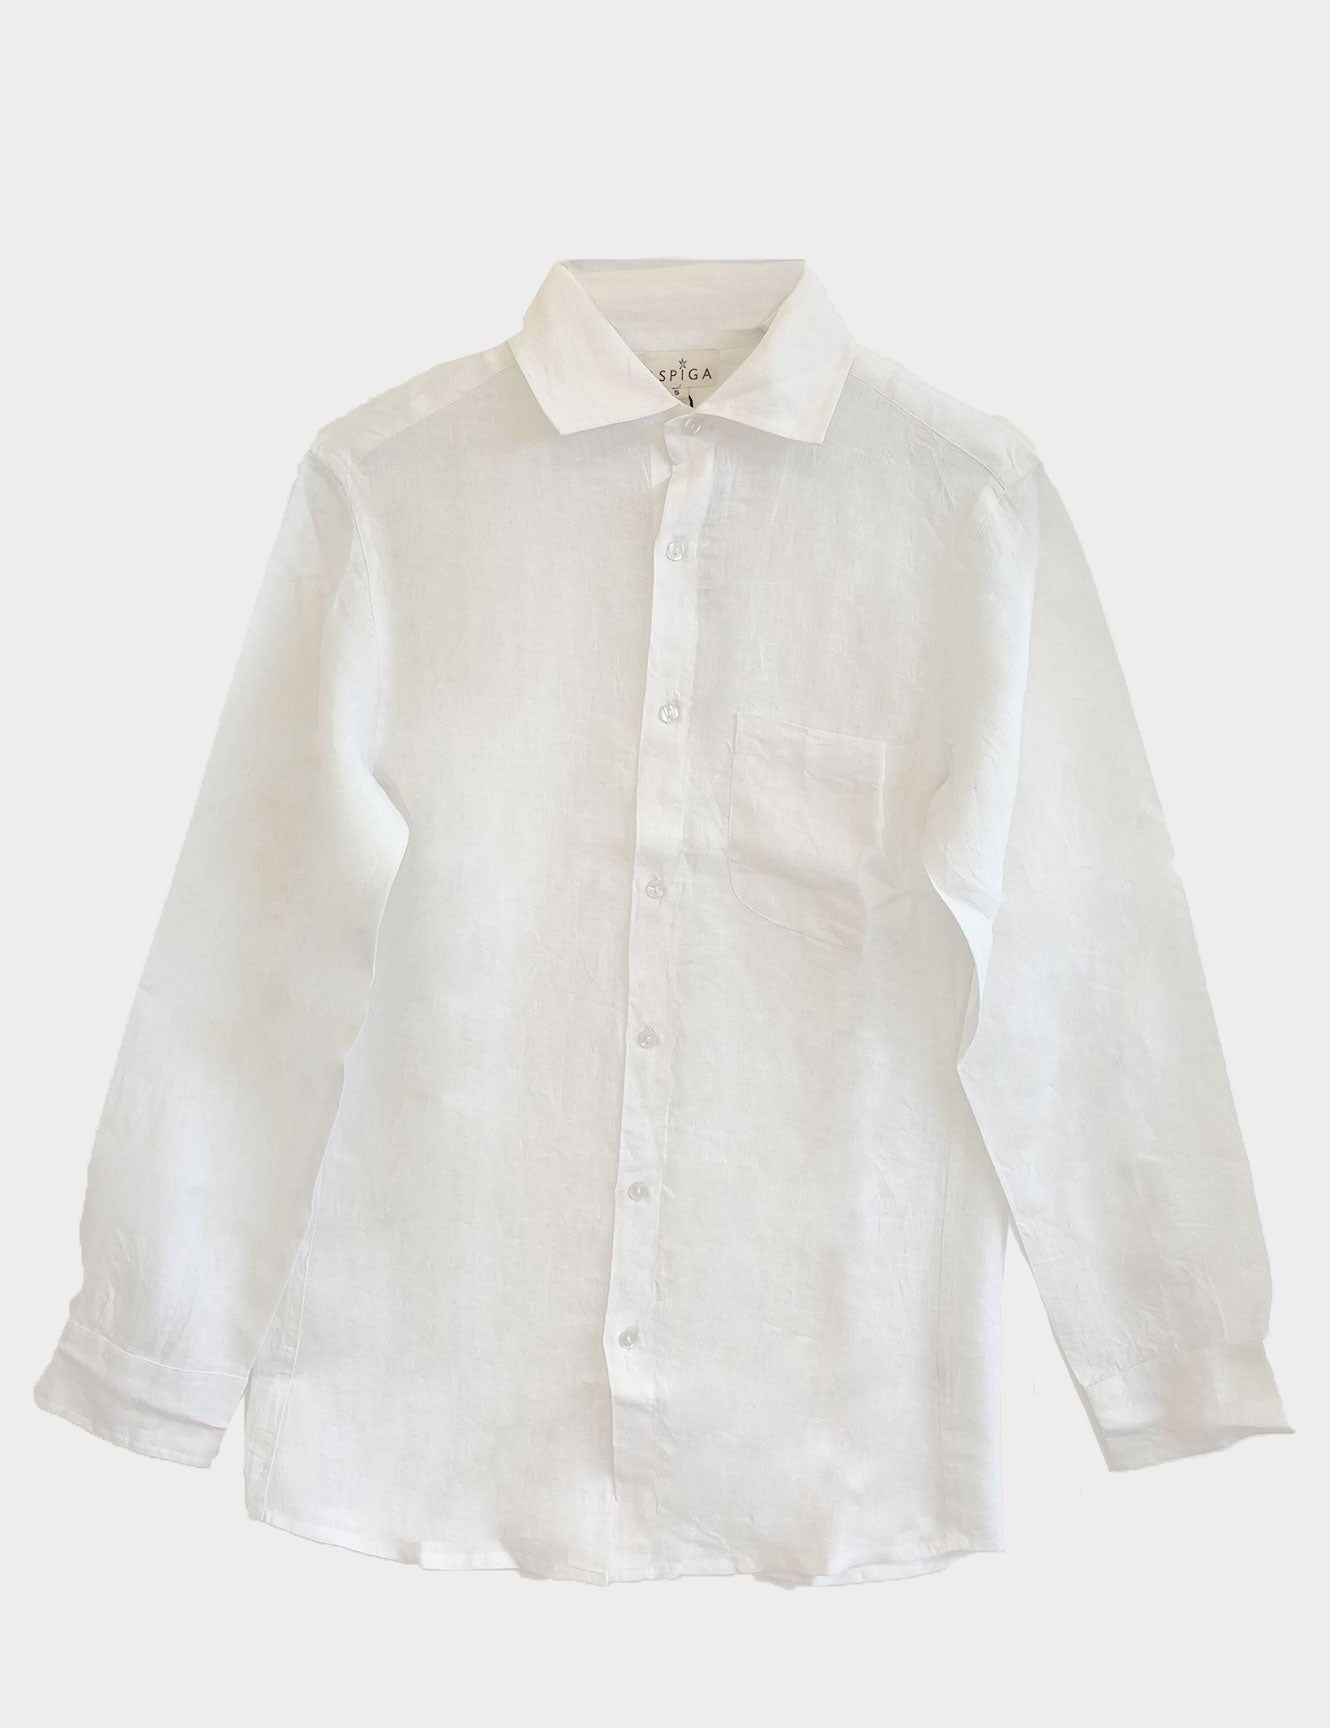 White-Mens-Linen-Shirt-hanger_31f652af-843a-4011-ab39-f52f28075be2.jpg